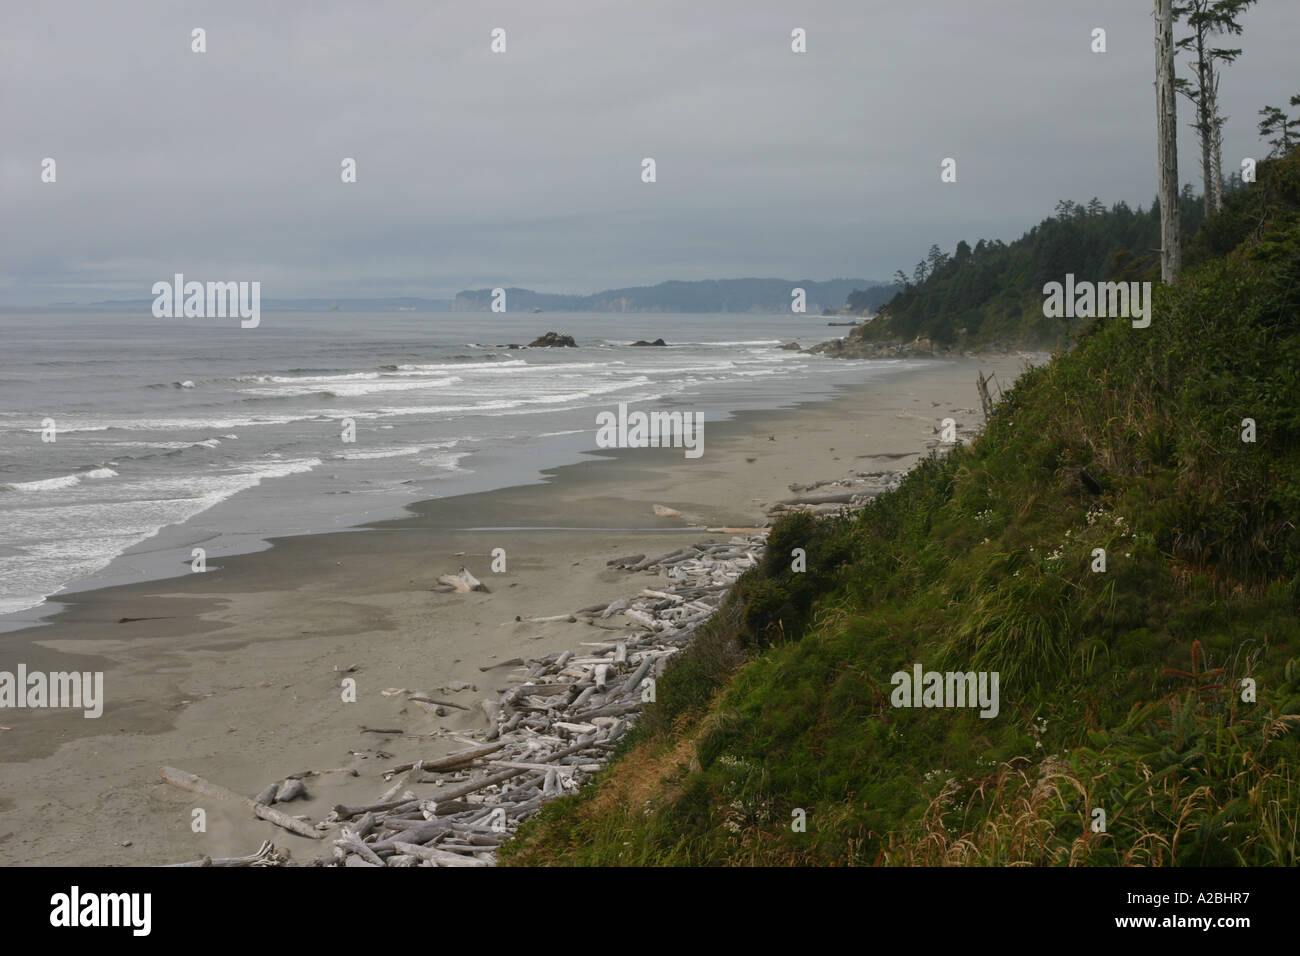 Die windgepeitschten Bäume und Sträucher des zweiten Strand Landzungen kontrastieren mit dem entfernterer Wellen, Treibholz, Strand und "Heuhaufen" Stockfoto